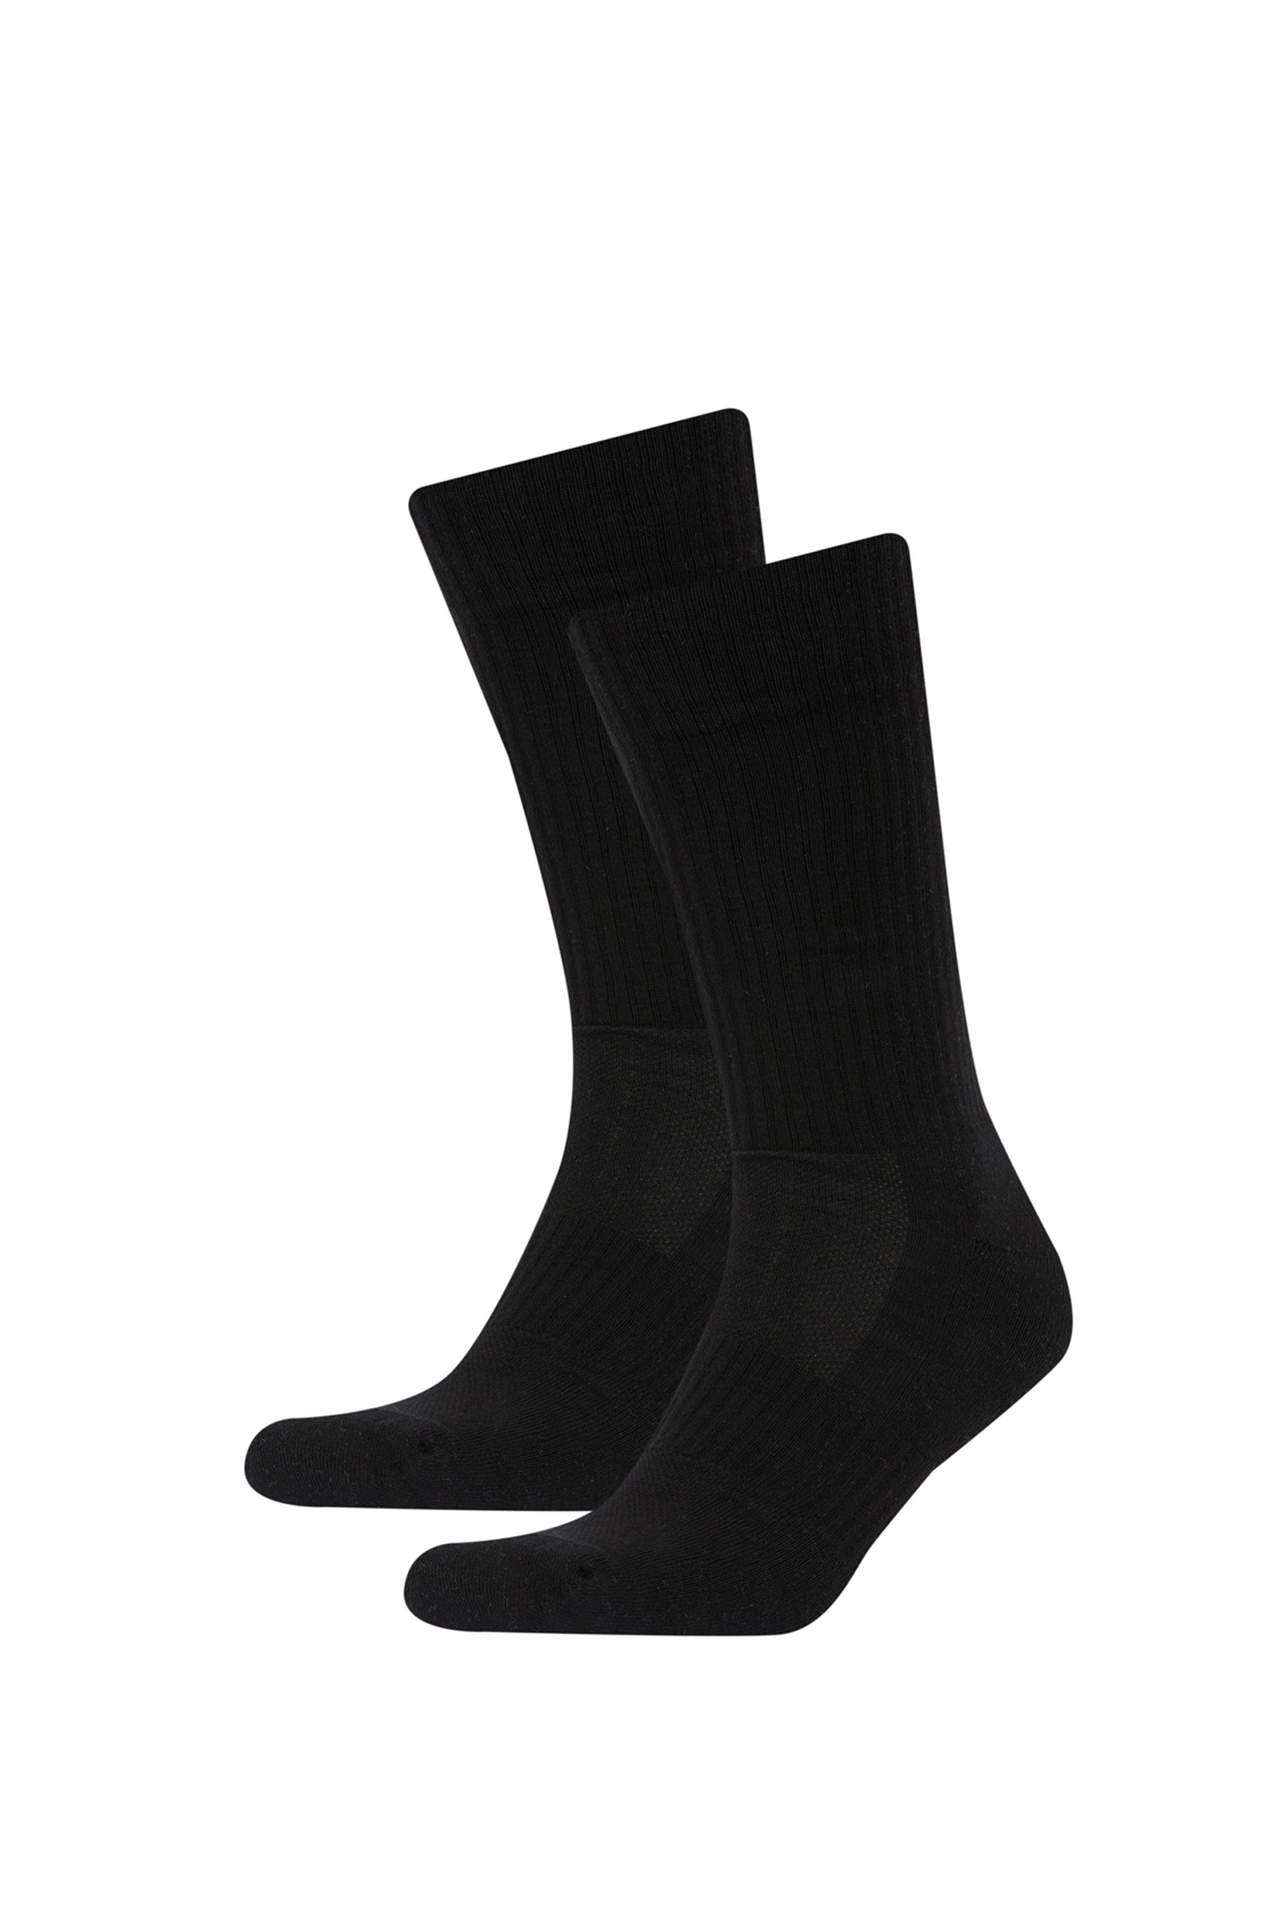 2 piece DeFacto Fit Long sock